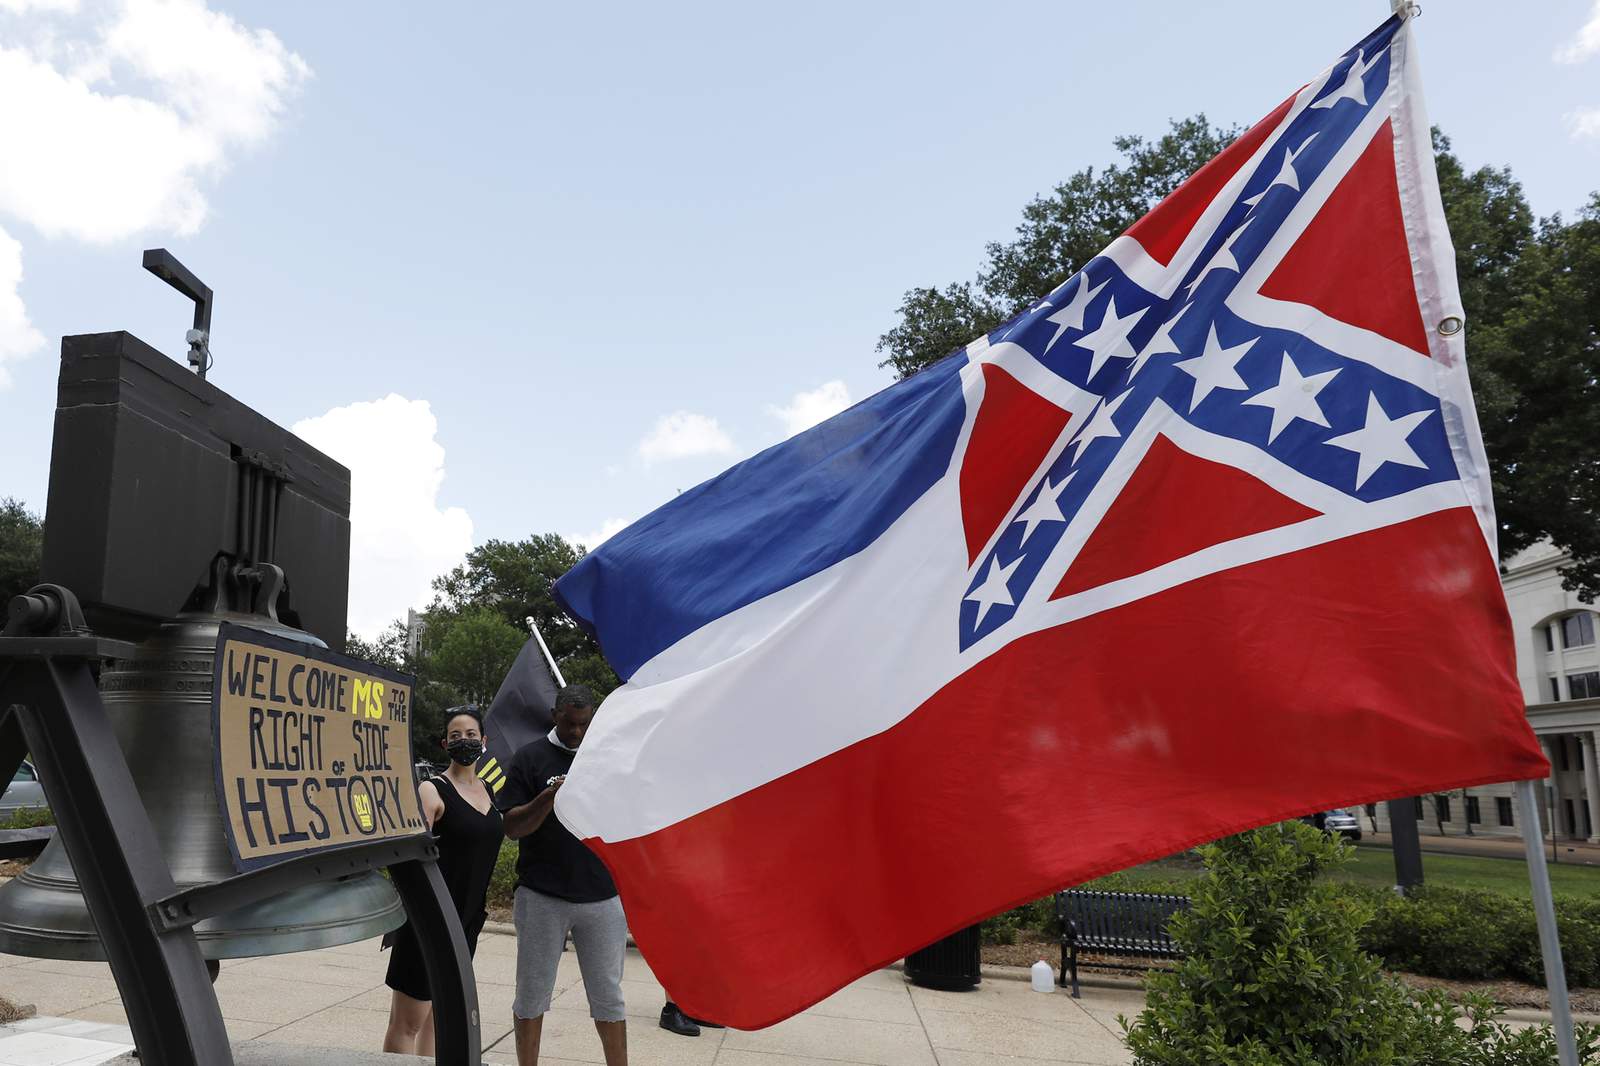 Mississippi state legislature passes bill to change state flag